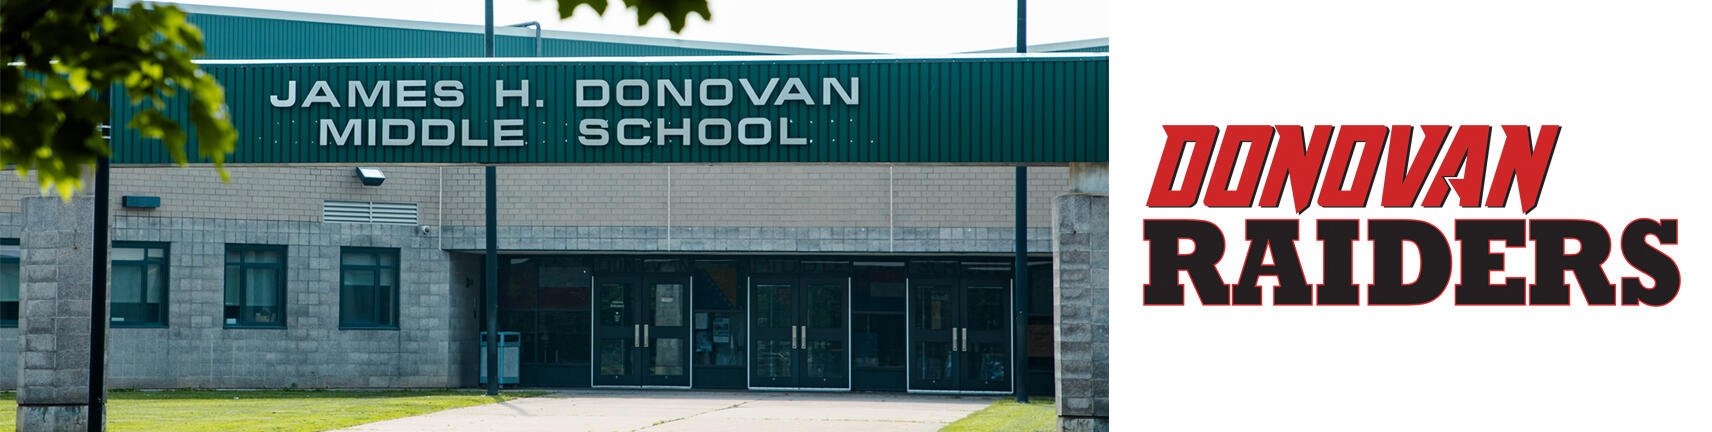 Zdjęcie budynku szkoły Donovan i logo Donovan Raiders